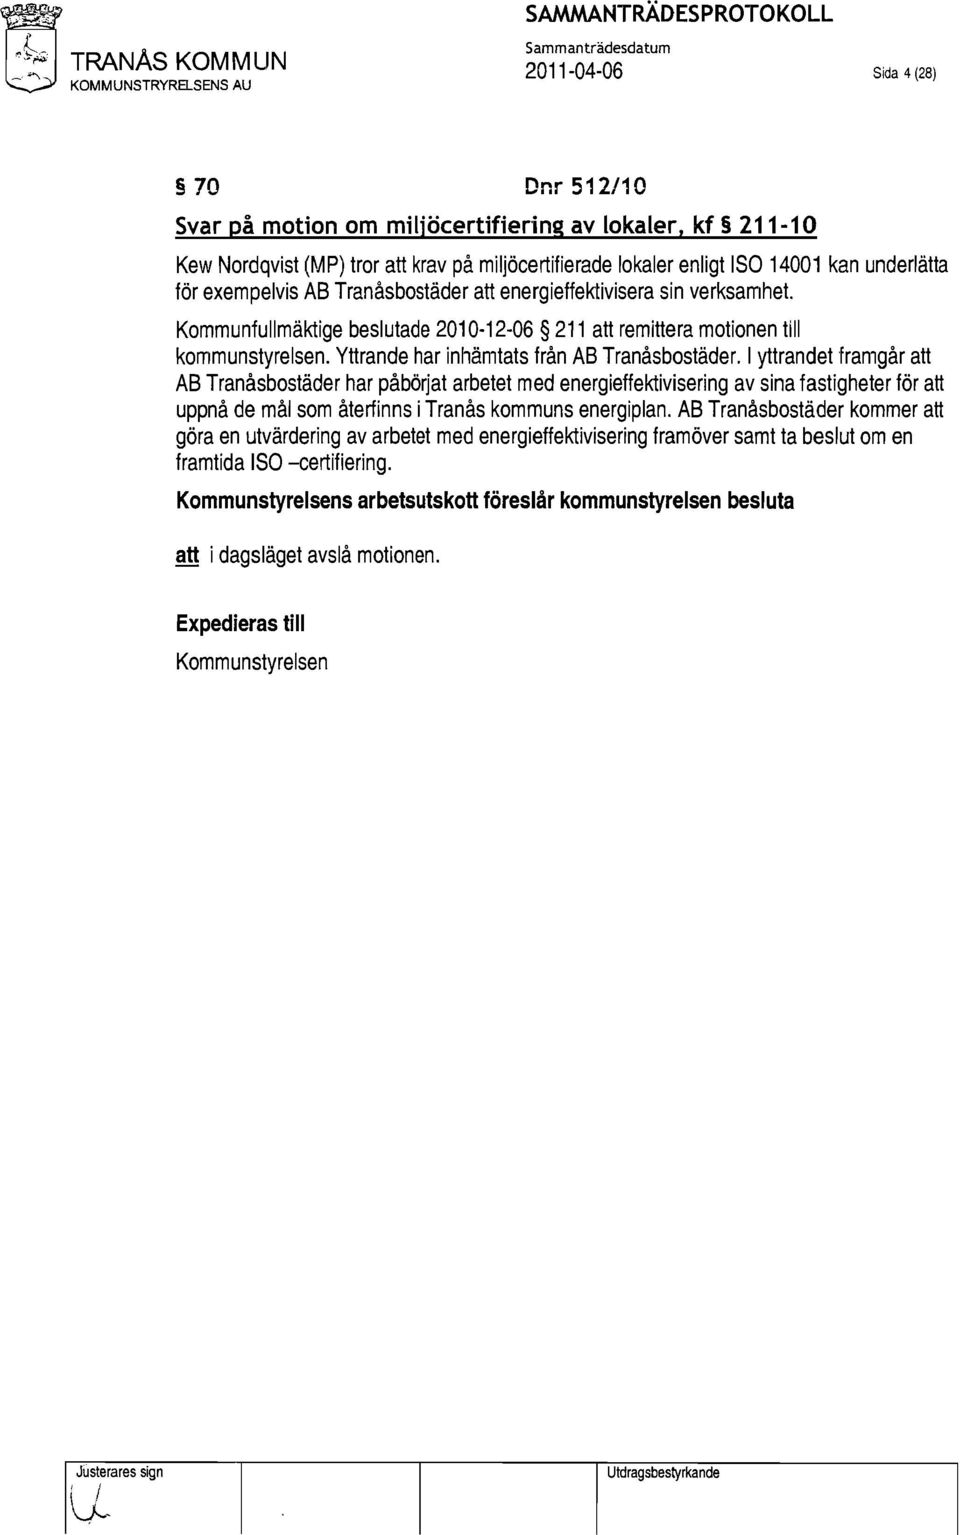 Kommunfullmäktige beslutade 2010 12 06 211 att remittera motionen till kommunstyrelsen. Yttrande har lnhämtats från AB Tranåsbostäder.